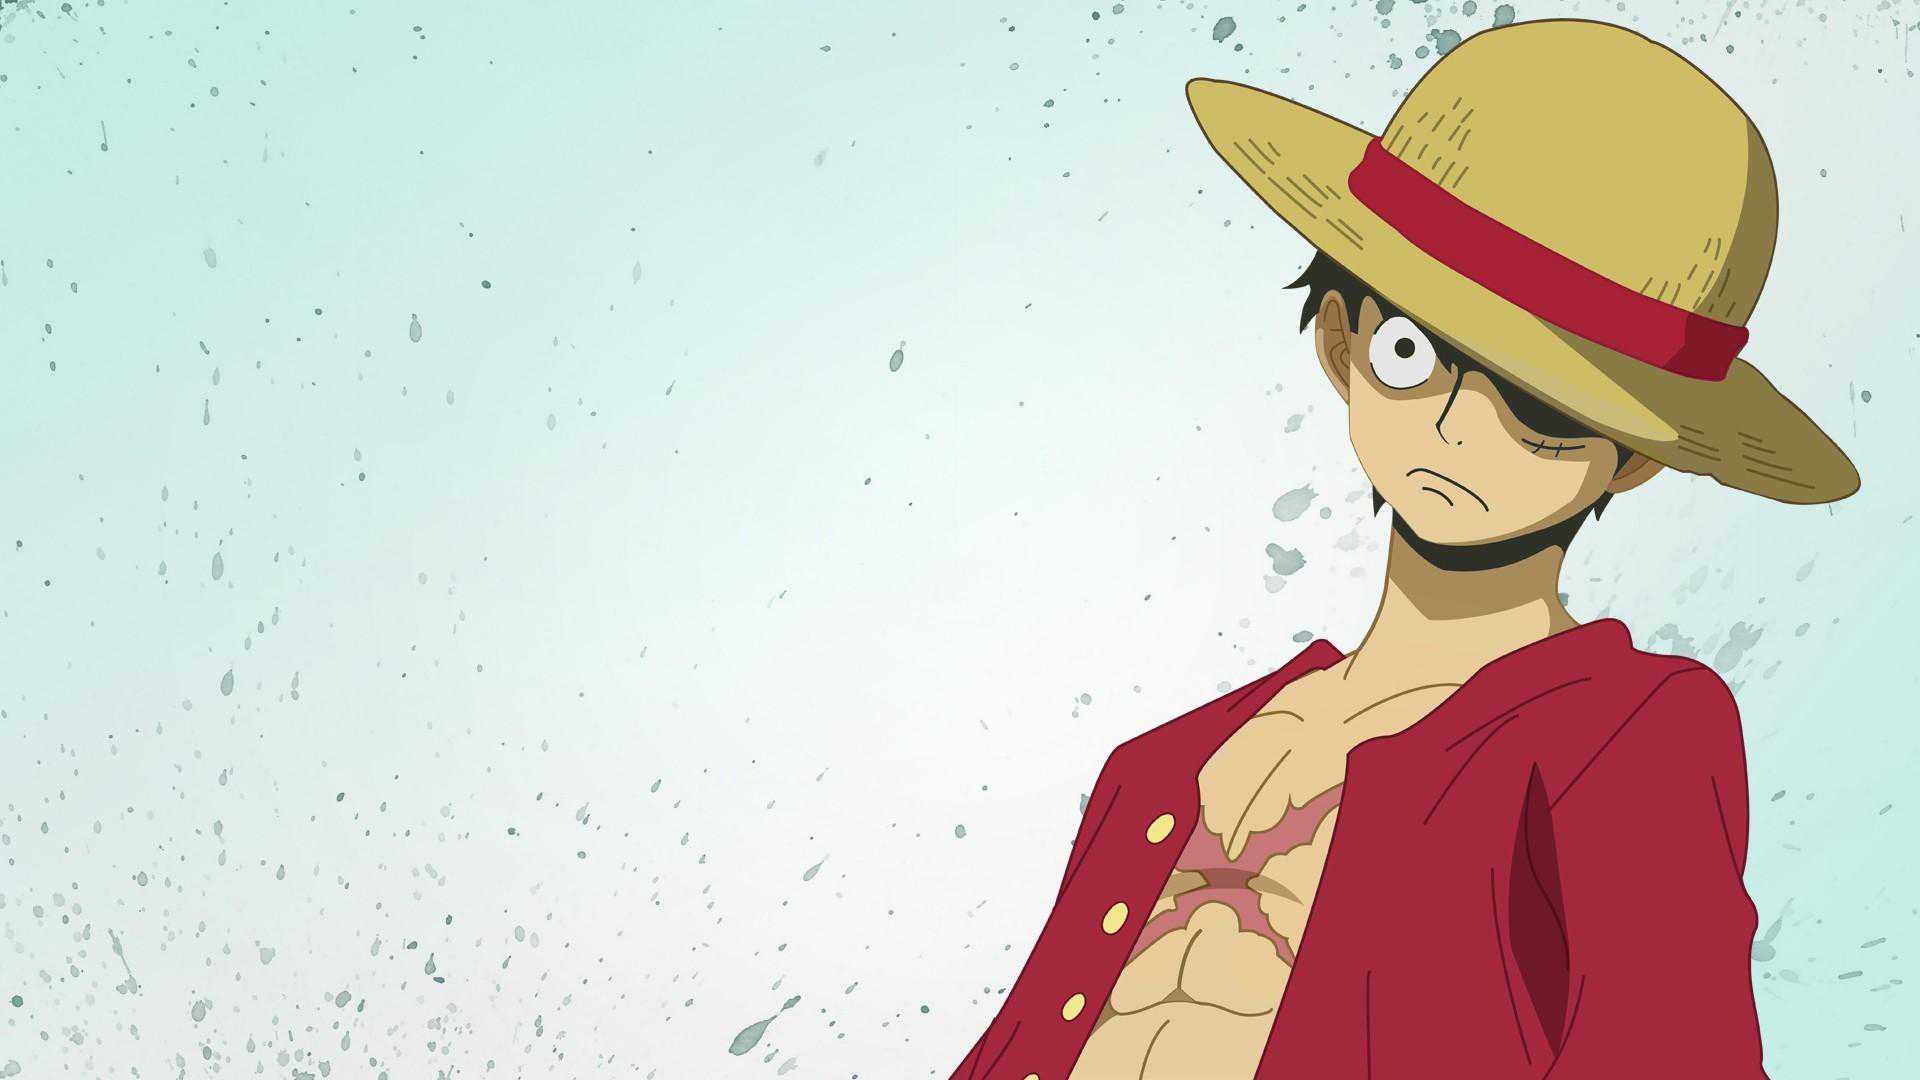 Tổng hợp hình ảnh One Piece đẹp nhất - Kho ảnh đẹp | Manga anime one piece, One  piece luffy, One piece drawing